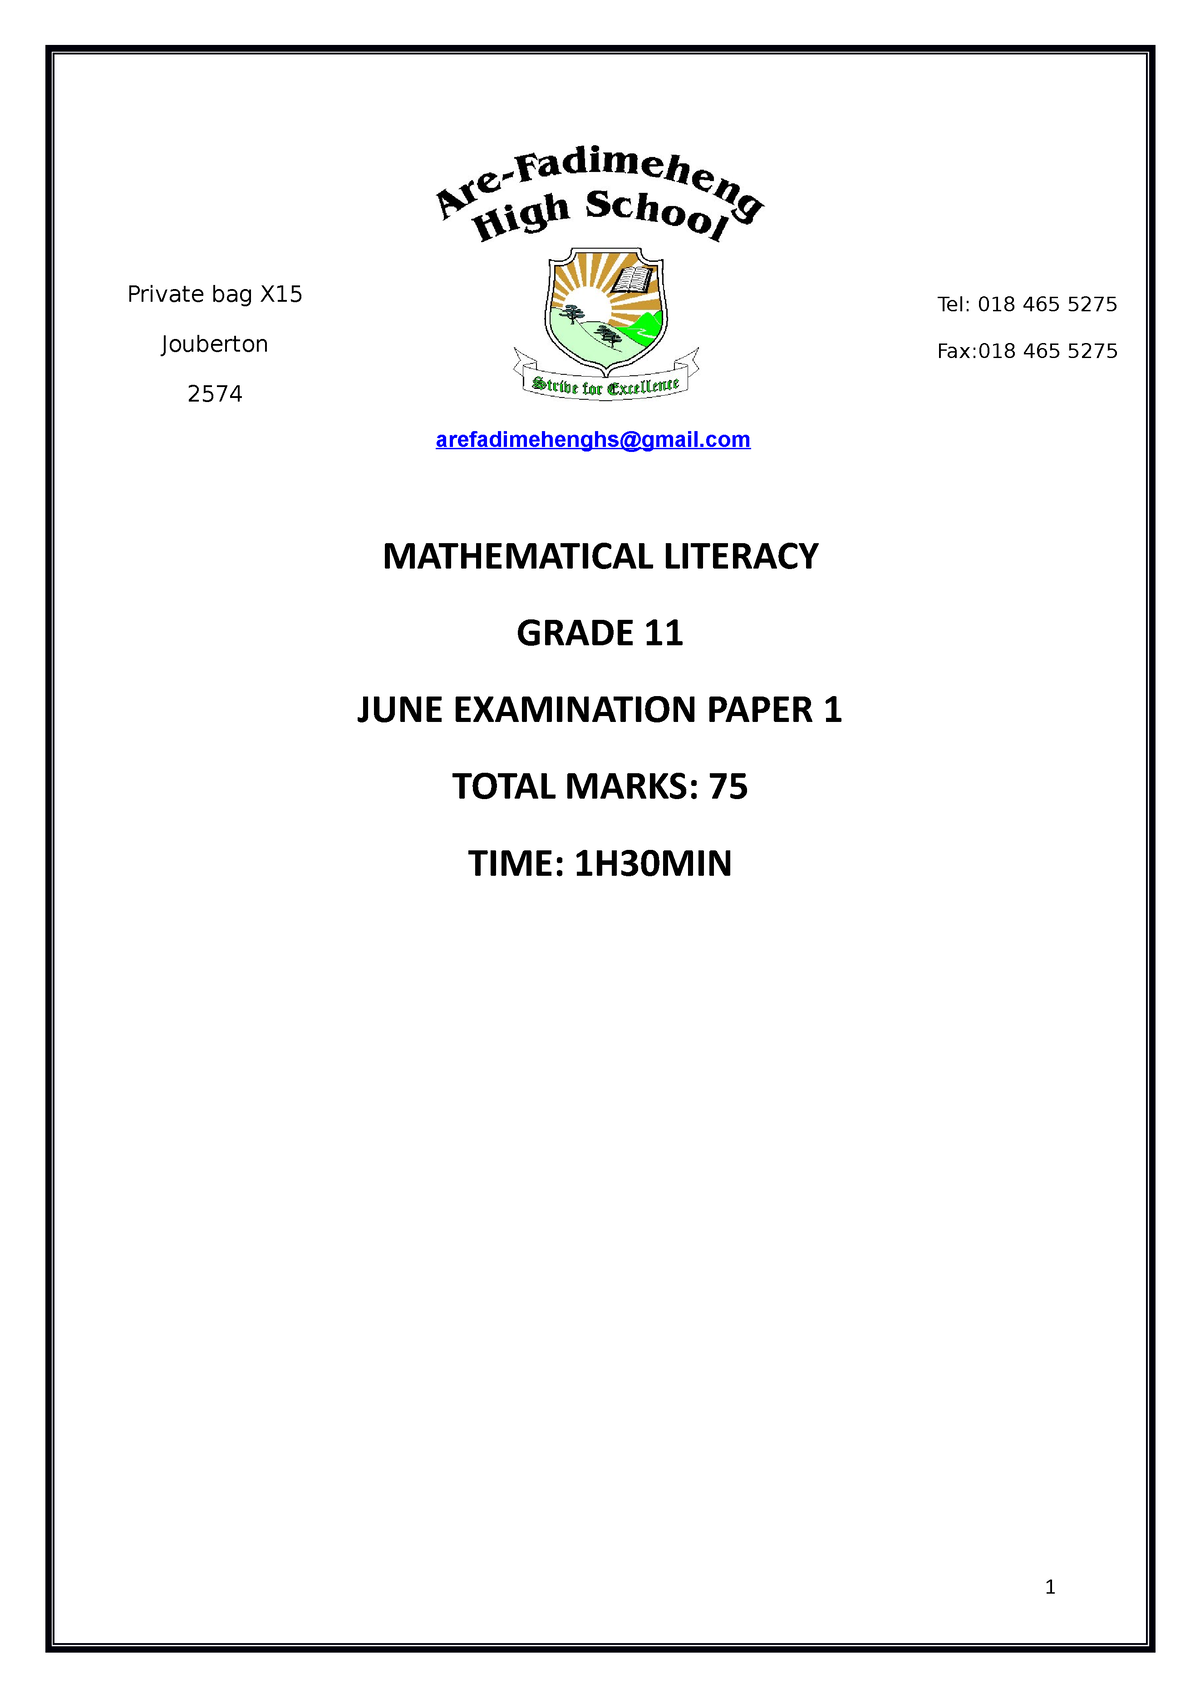 mathematical literacy grade 11 term 3 assignment 2023 memorandum